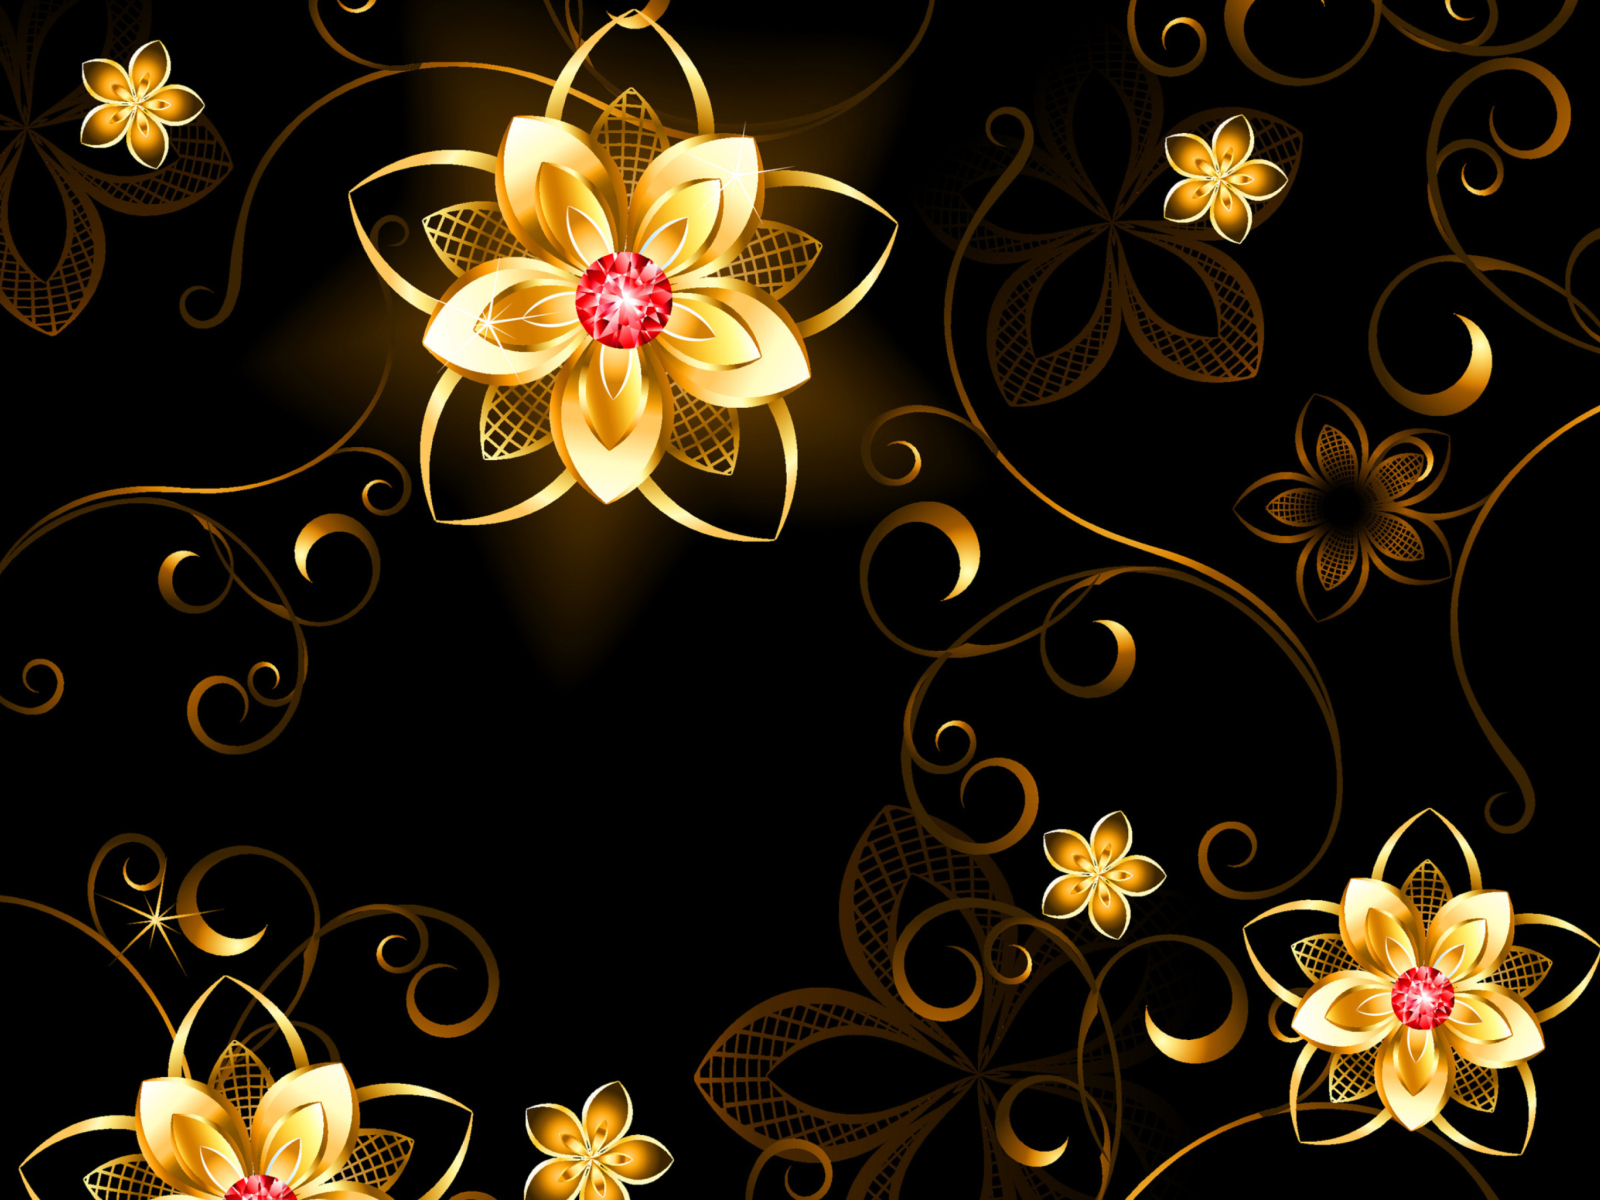 Golden Flowers wallpaper 1600x1200